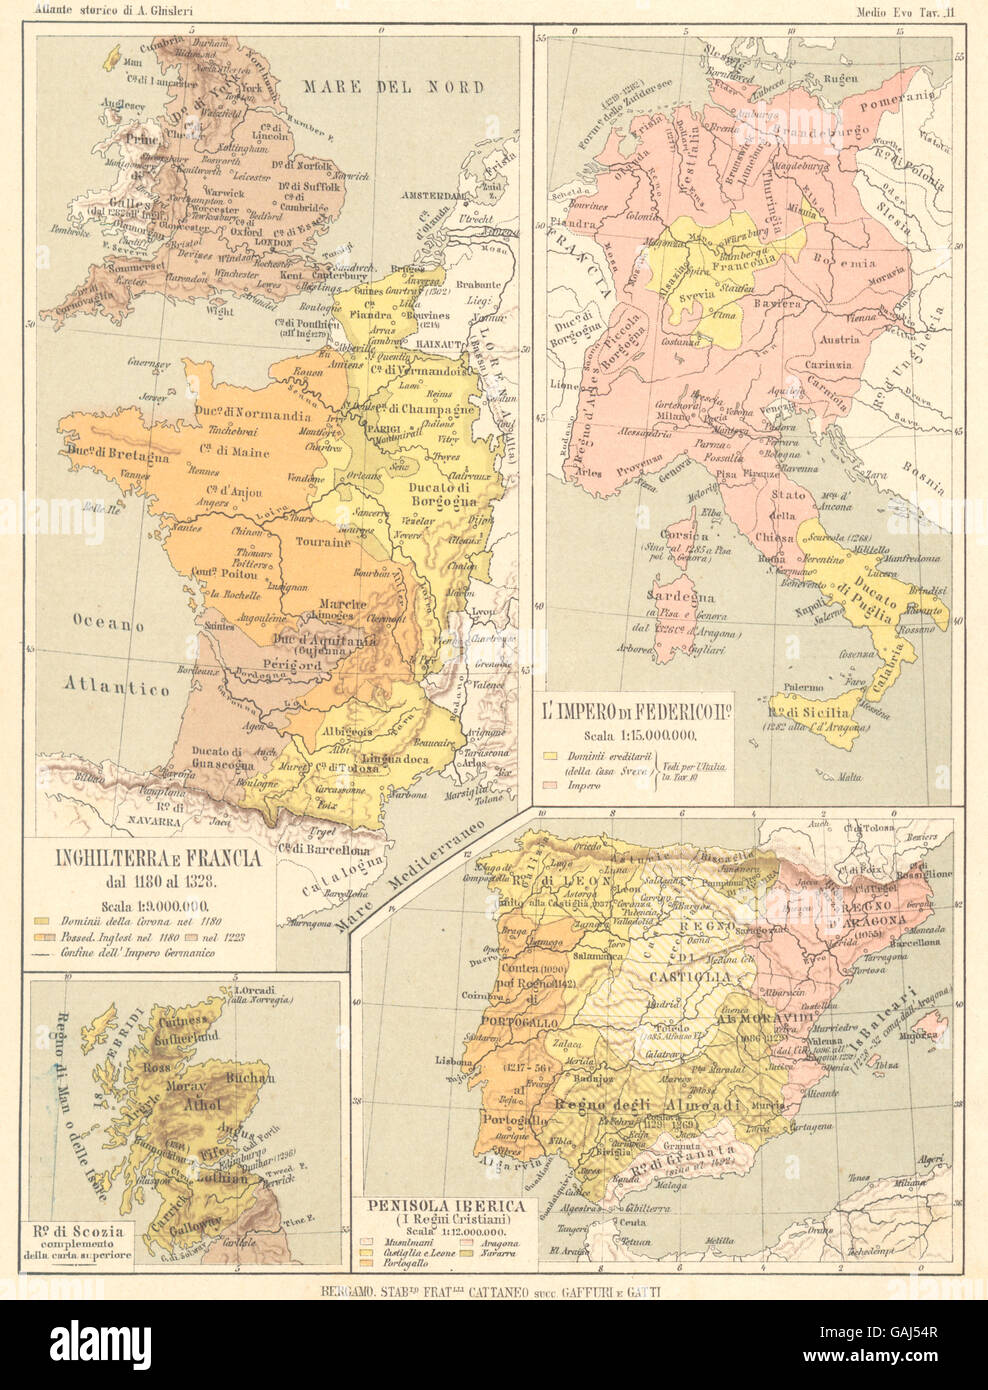 Europa: Inghilterra Francia 13C Impero Federicoiio Ro Scozia Iberica, 1889-Karte Stockfoto